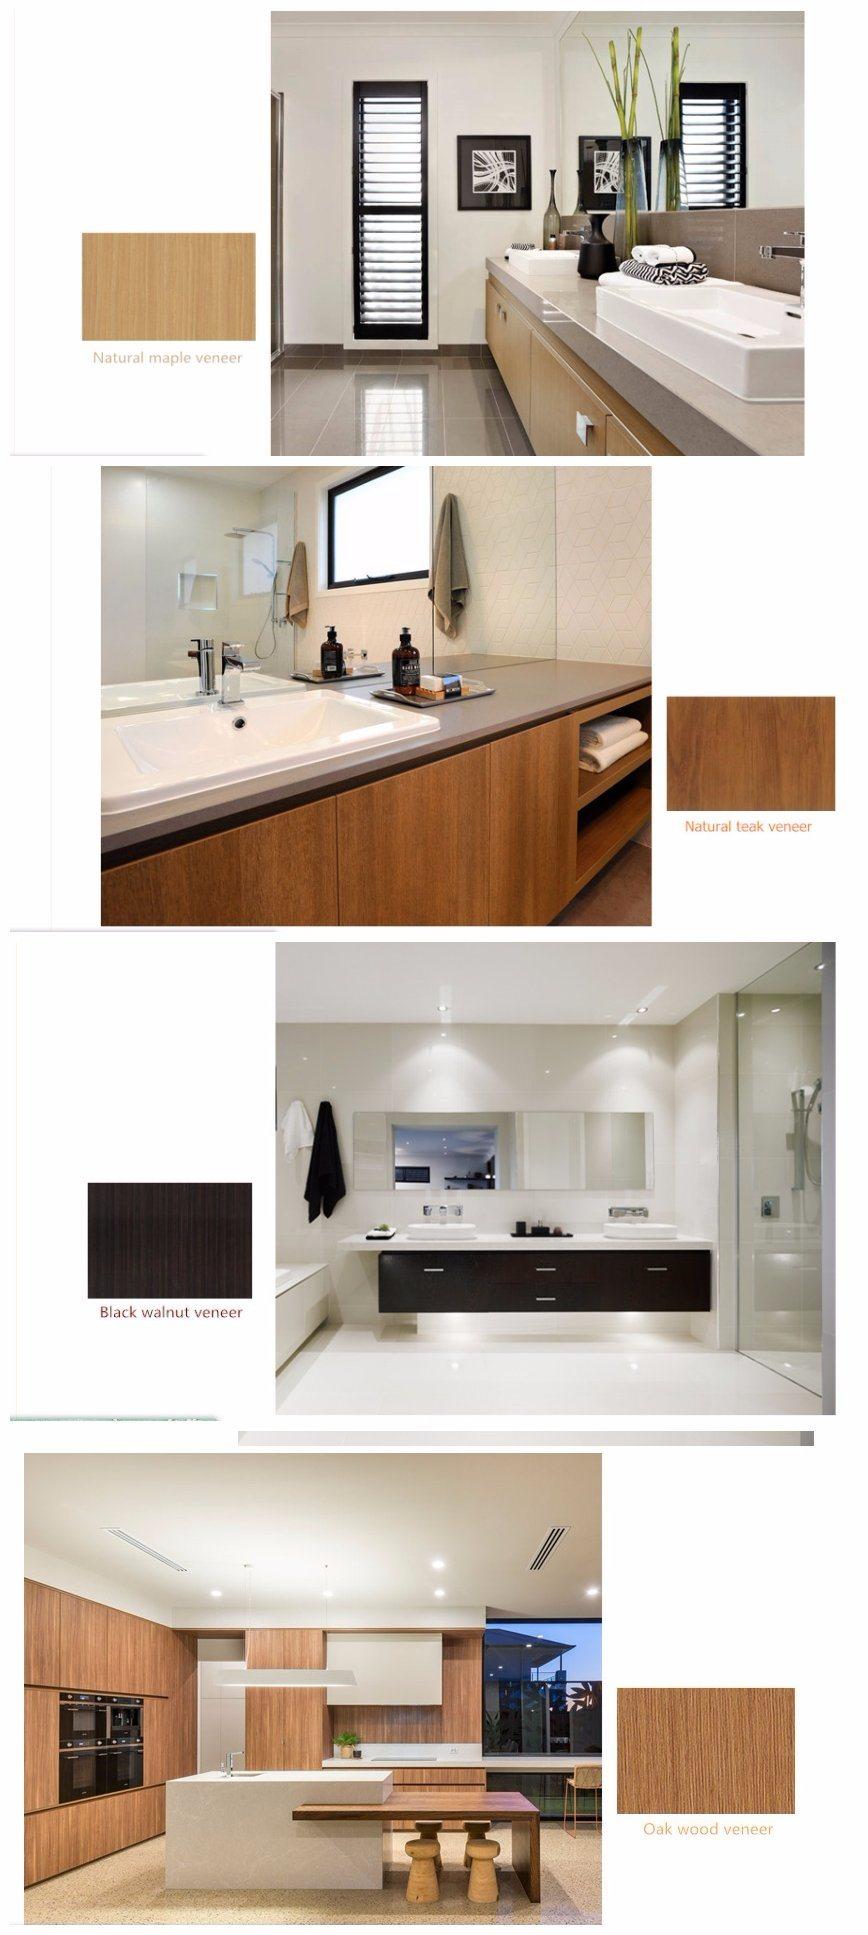 Home Warm Design Practical Freestanding Wood Veneer Kitchen Cabinet